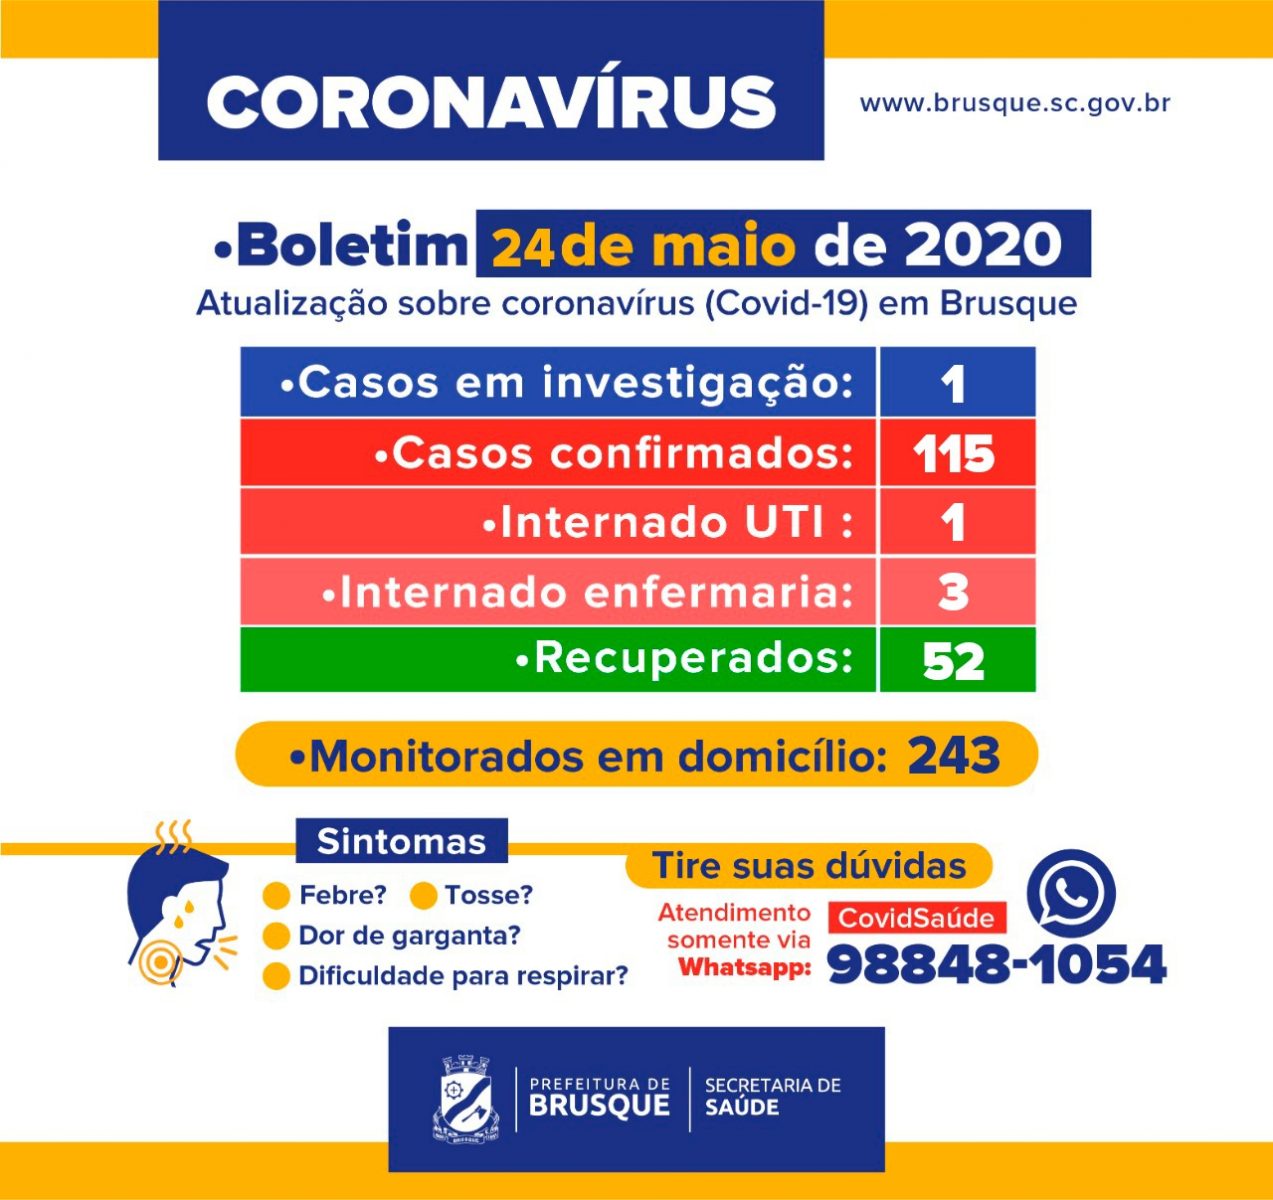 Boletim Epidemiológico: 115 casos confirmados de coronavírus em Brusque. 52 recuperados